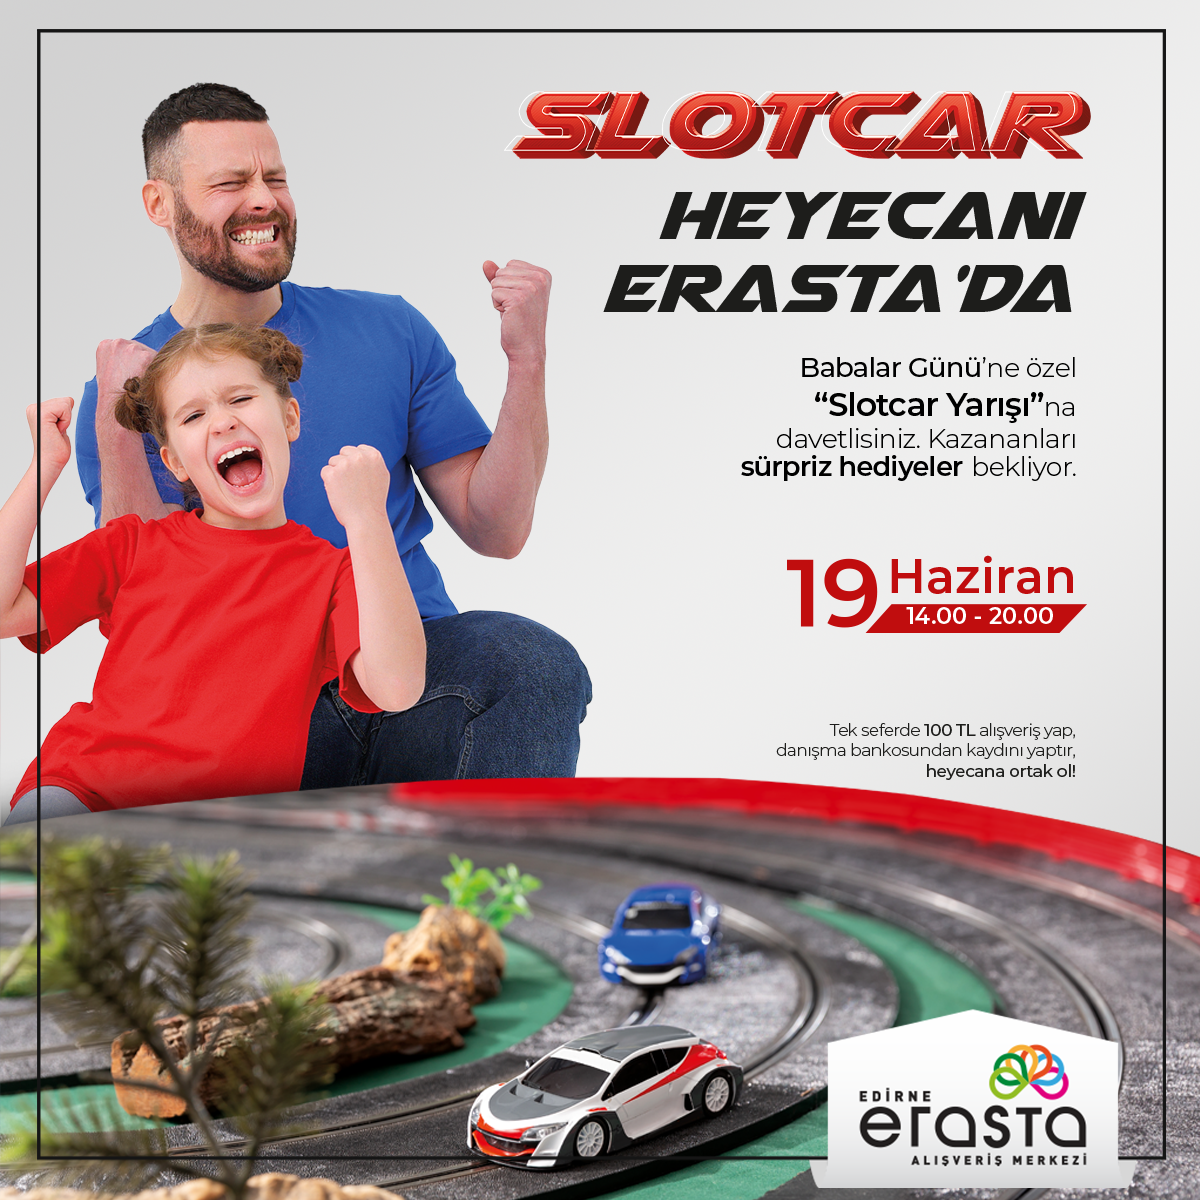 Slotcar Heyecanı Erasta’da